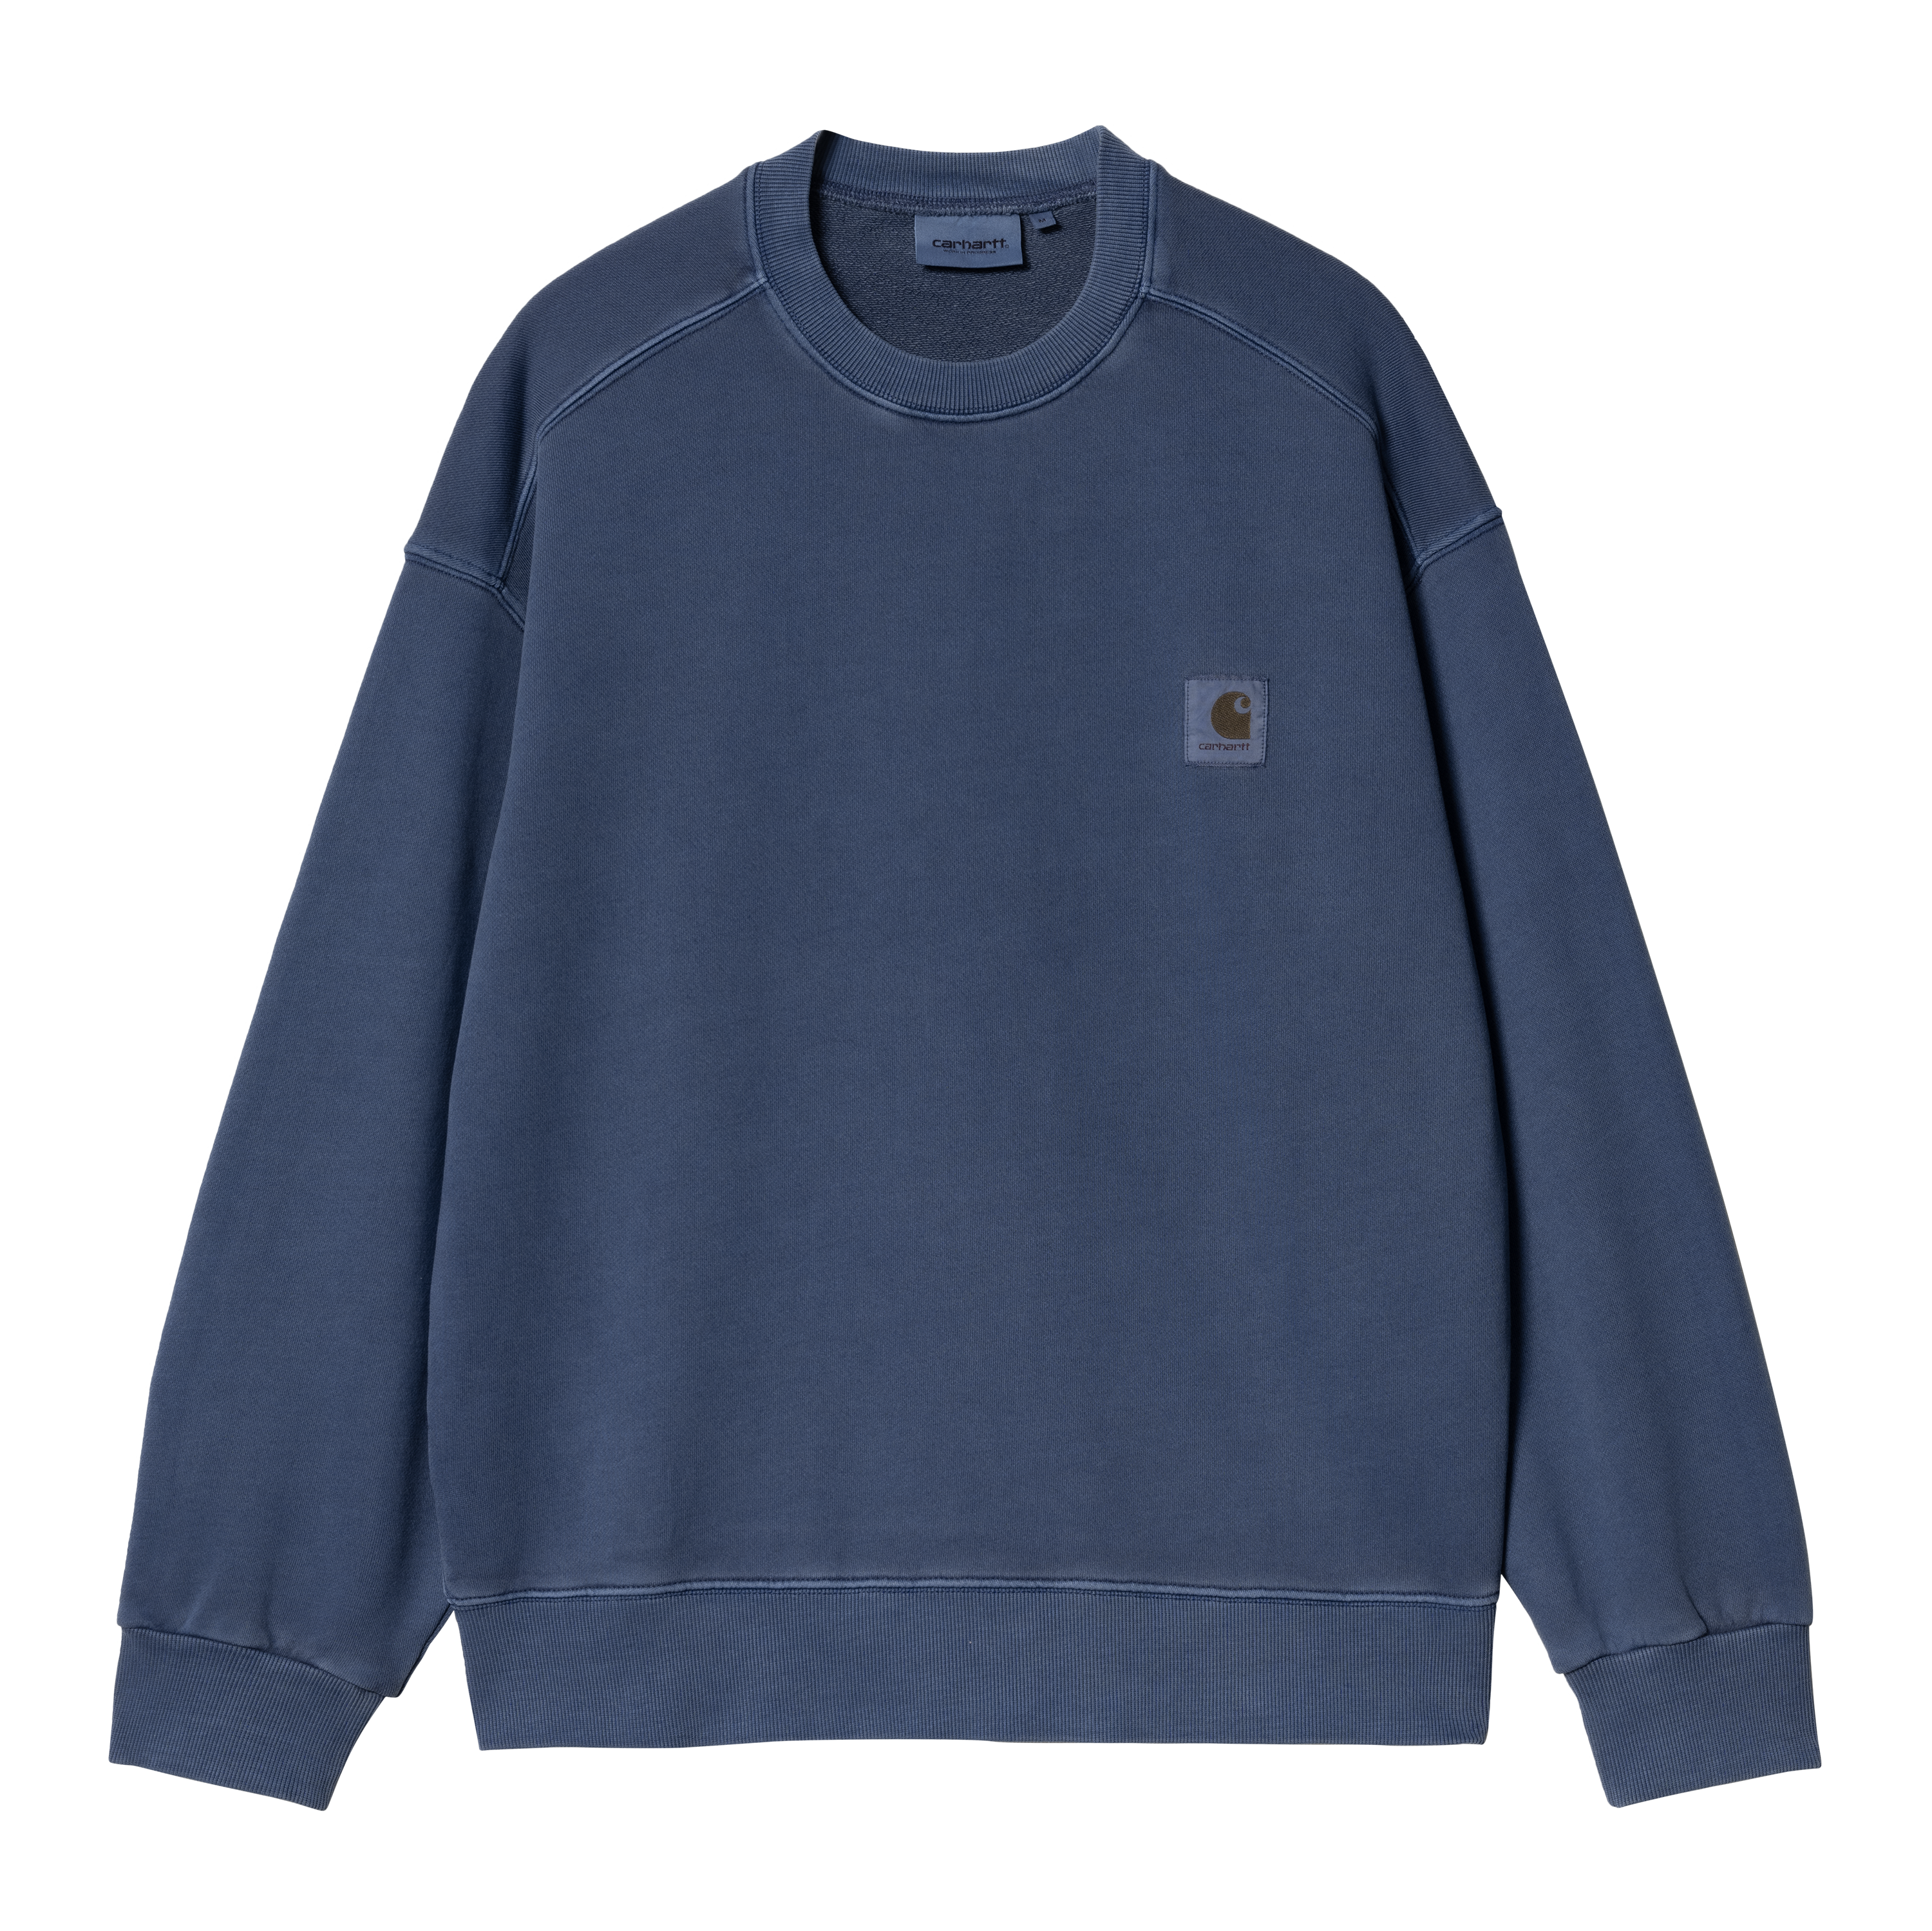 Carhartt WIP Nelson Sweatshirt in Blue